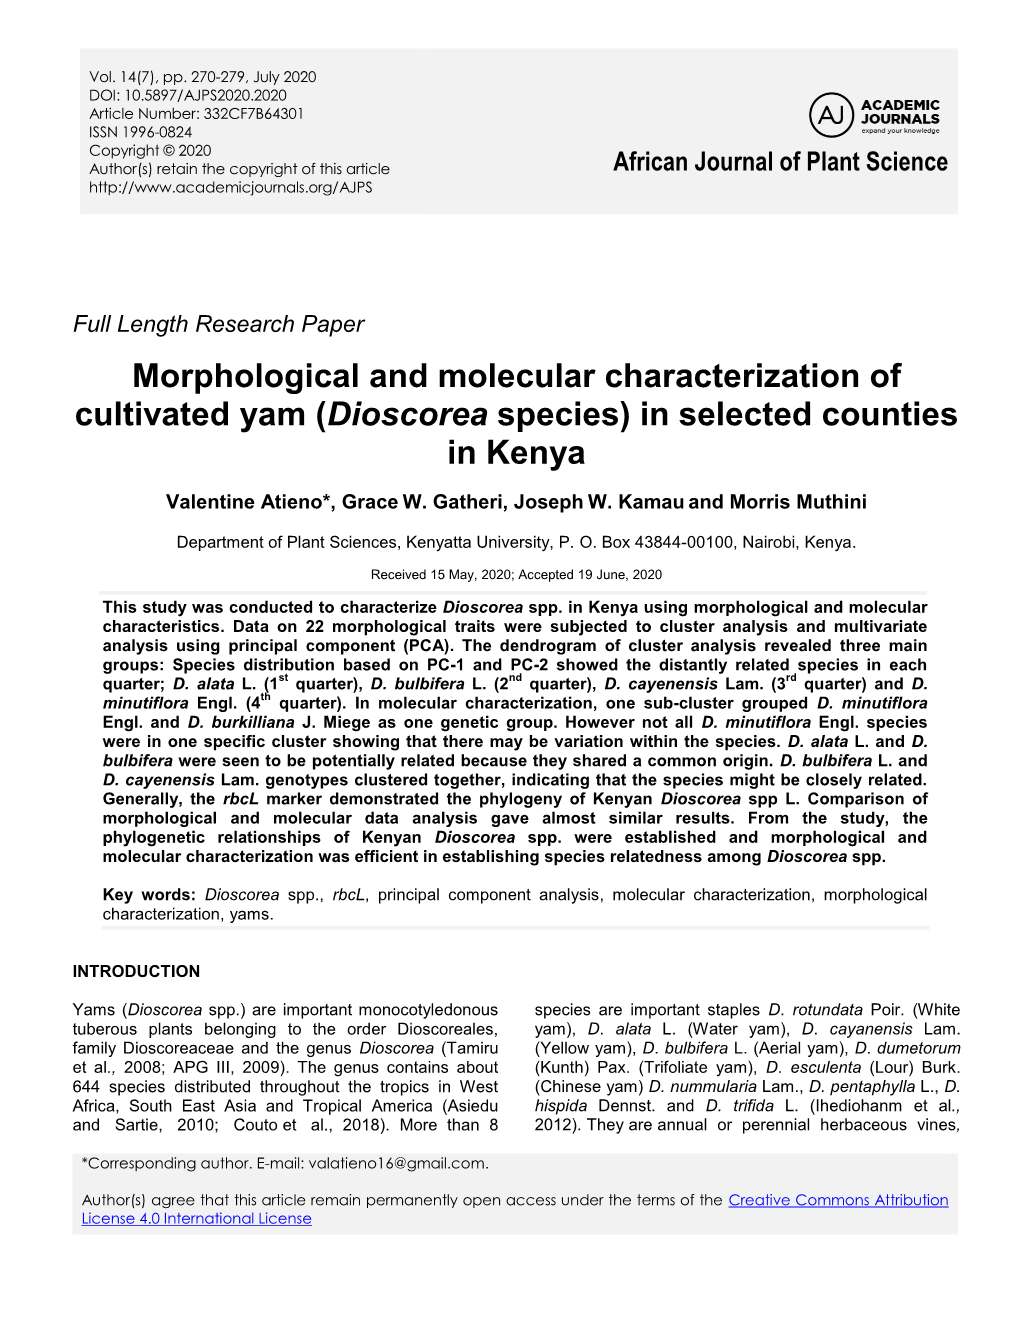 Dioscorea Species) in Selected Counties in Kenya